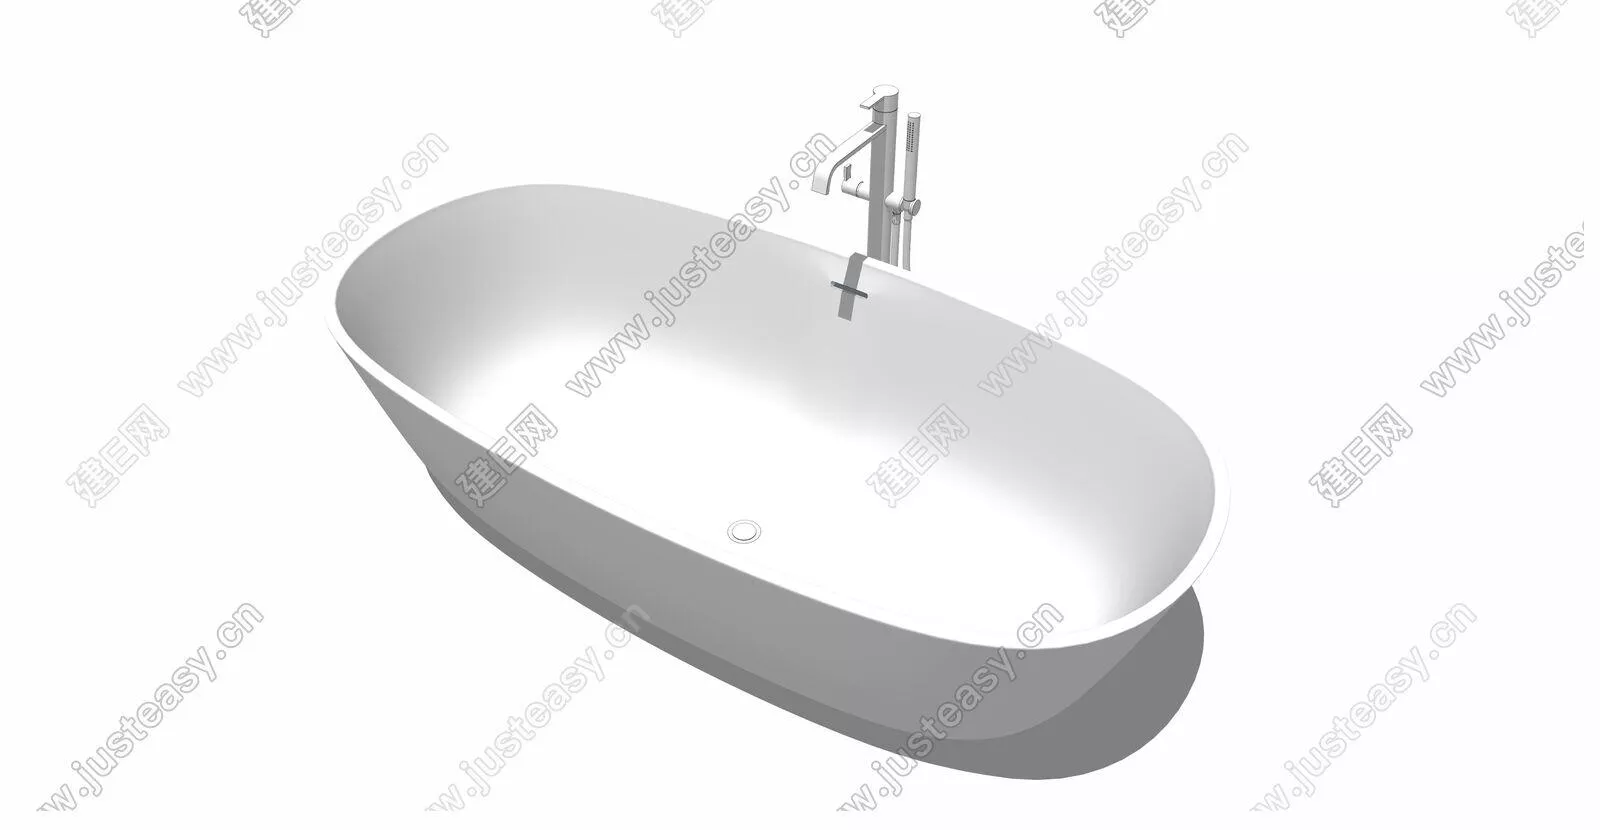 MODERN BATHTUB - SKETCHUP 3D MODEL - ENSCAPE - 110773578